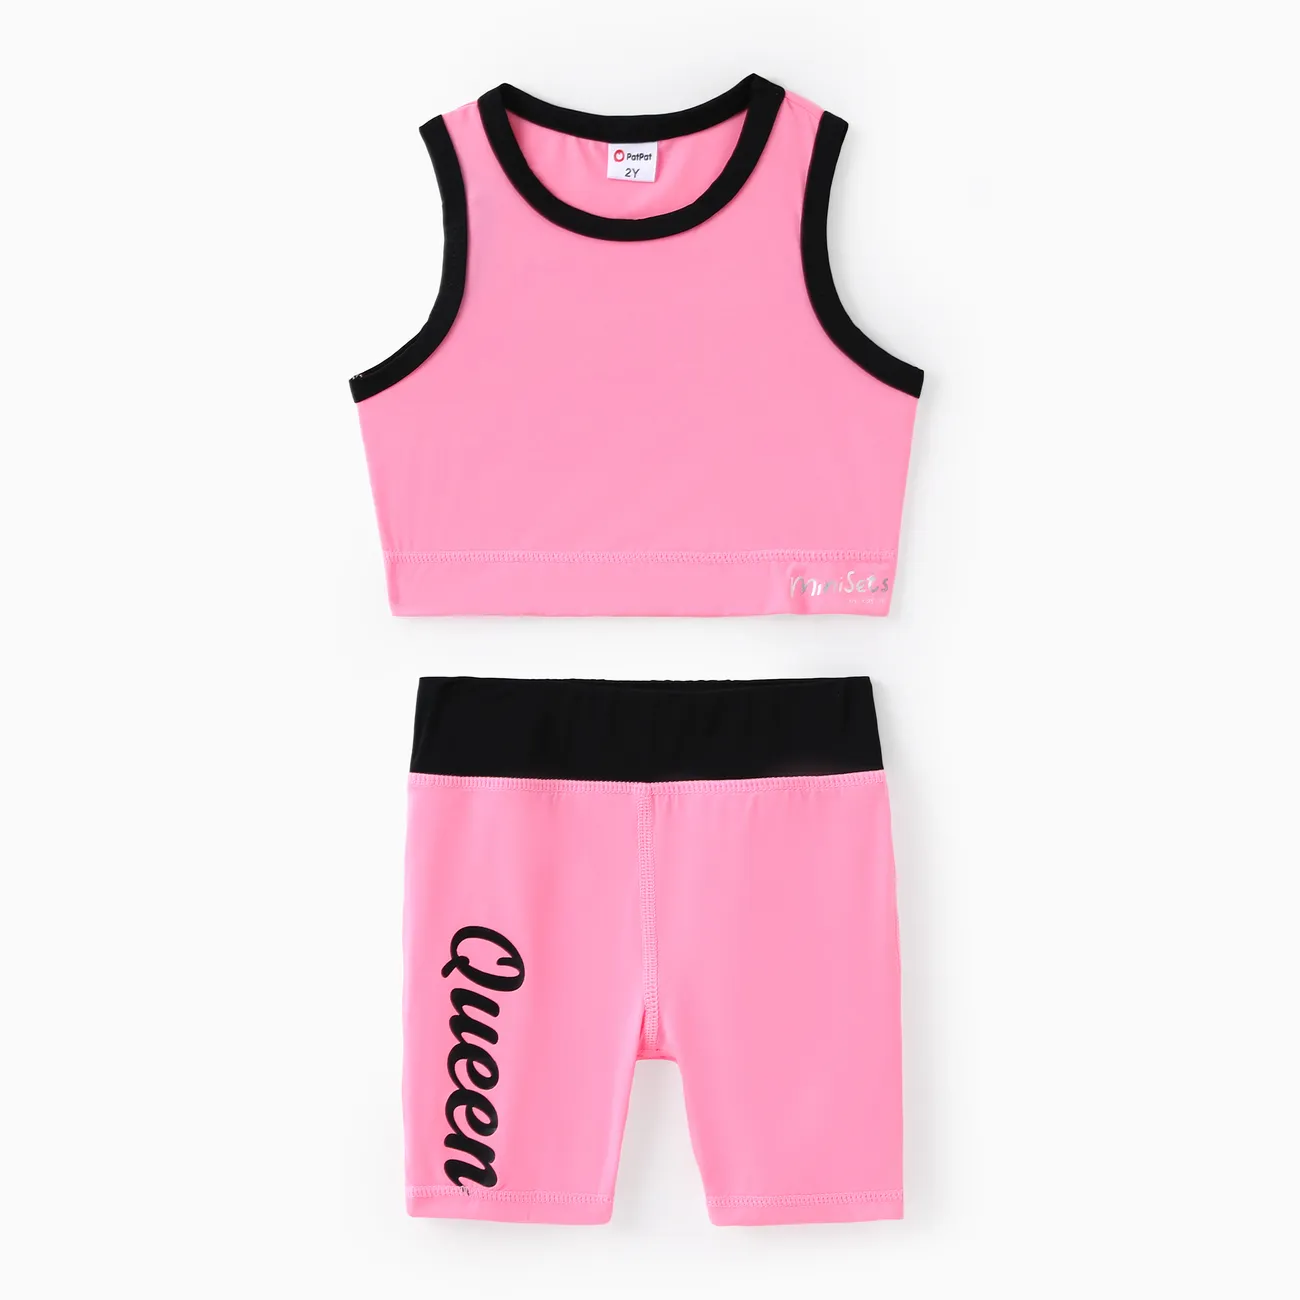 Toddler/Kid Girl 2pcs Tank Top and Short Leggings Set Pink big image 1